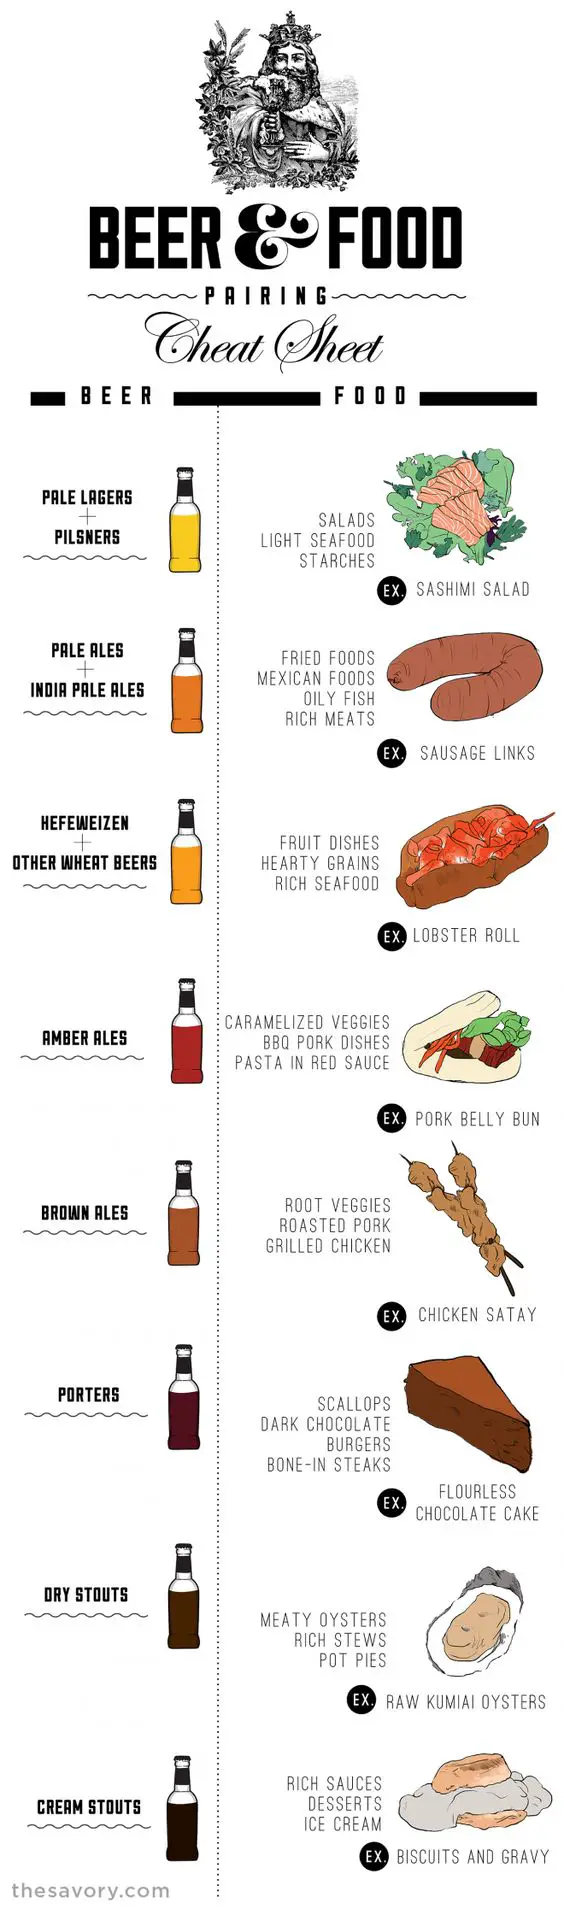 Beer & Food Cheat sheet